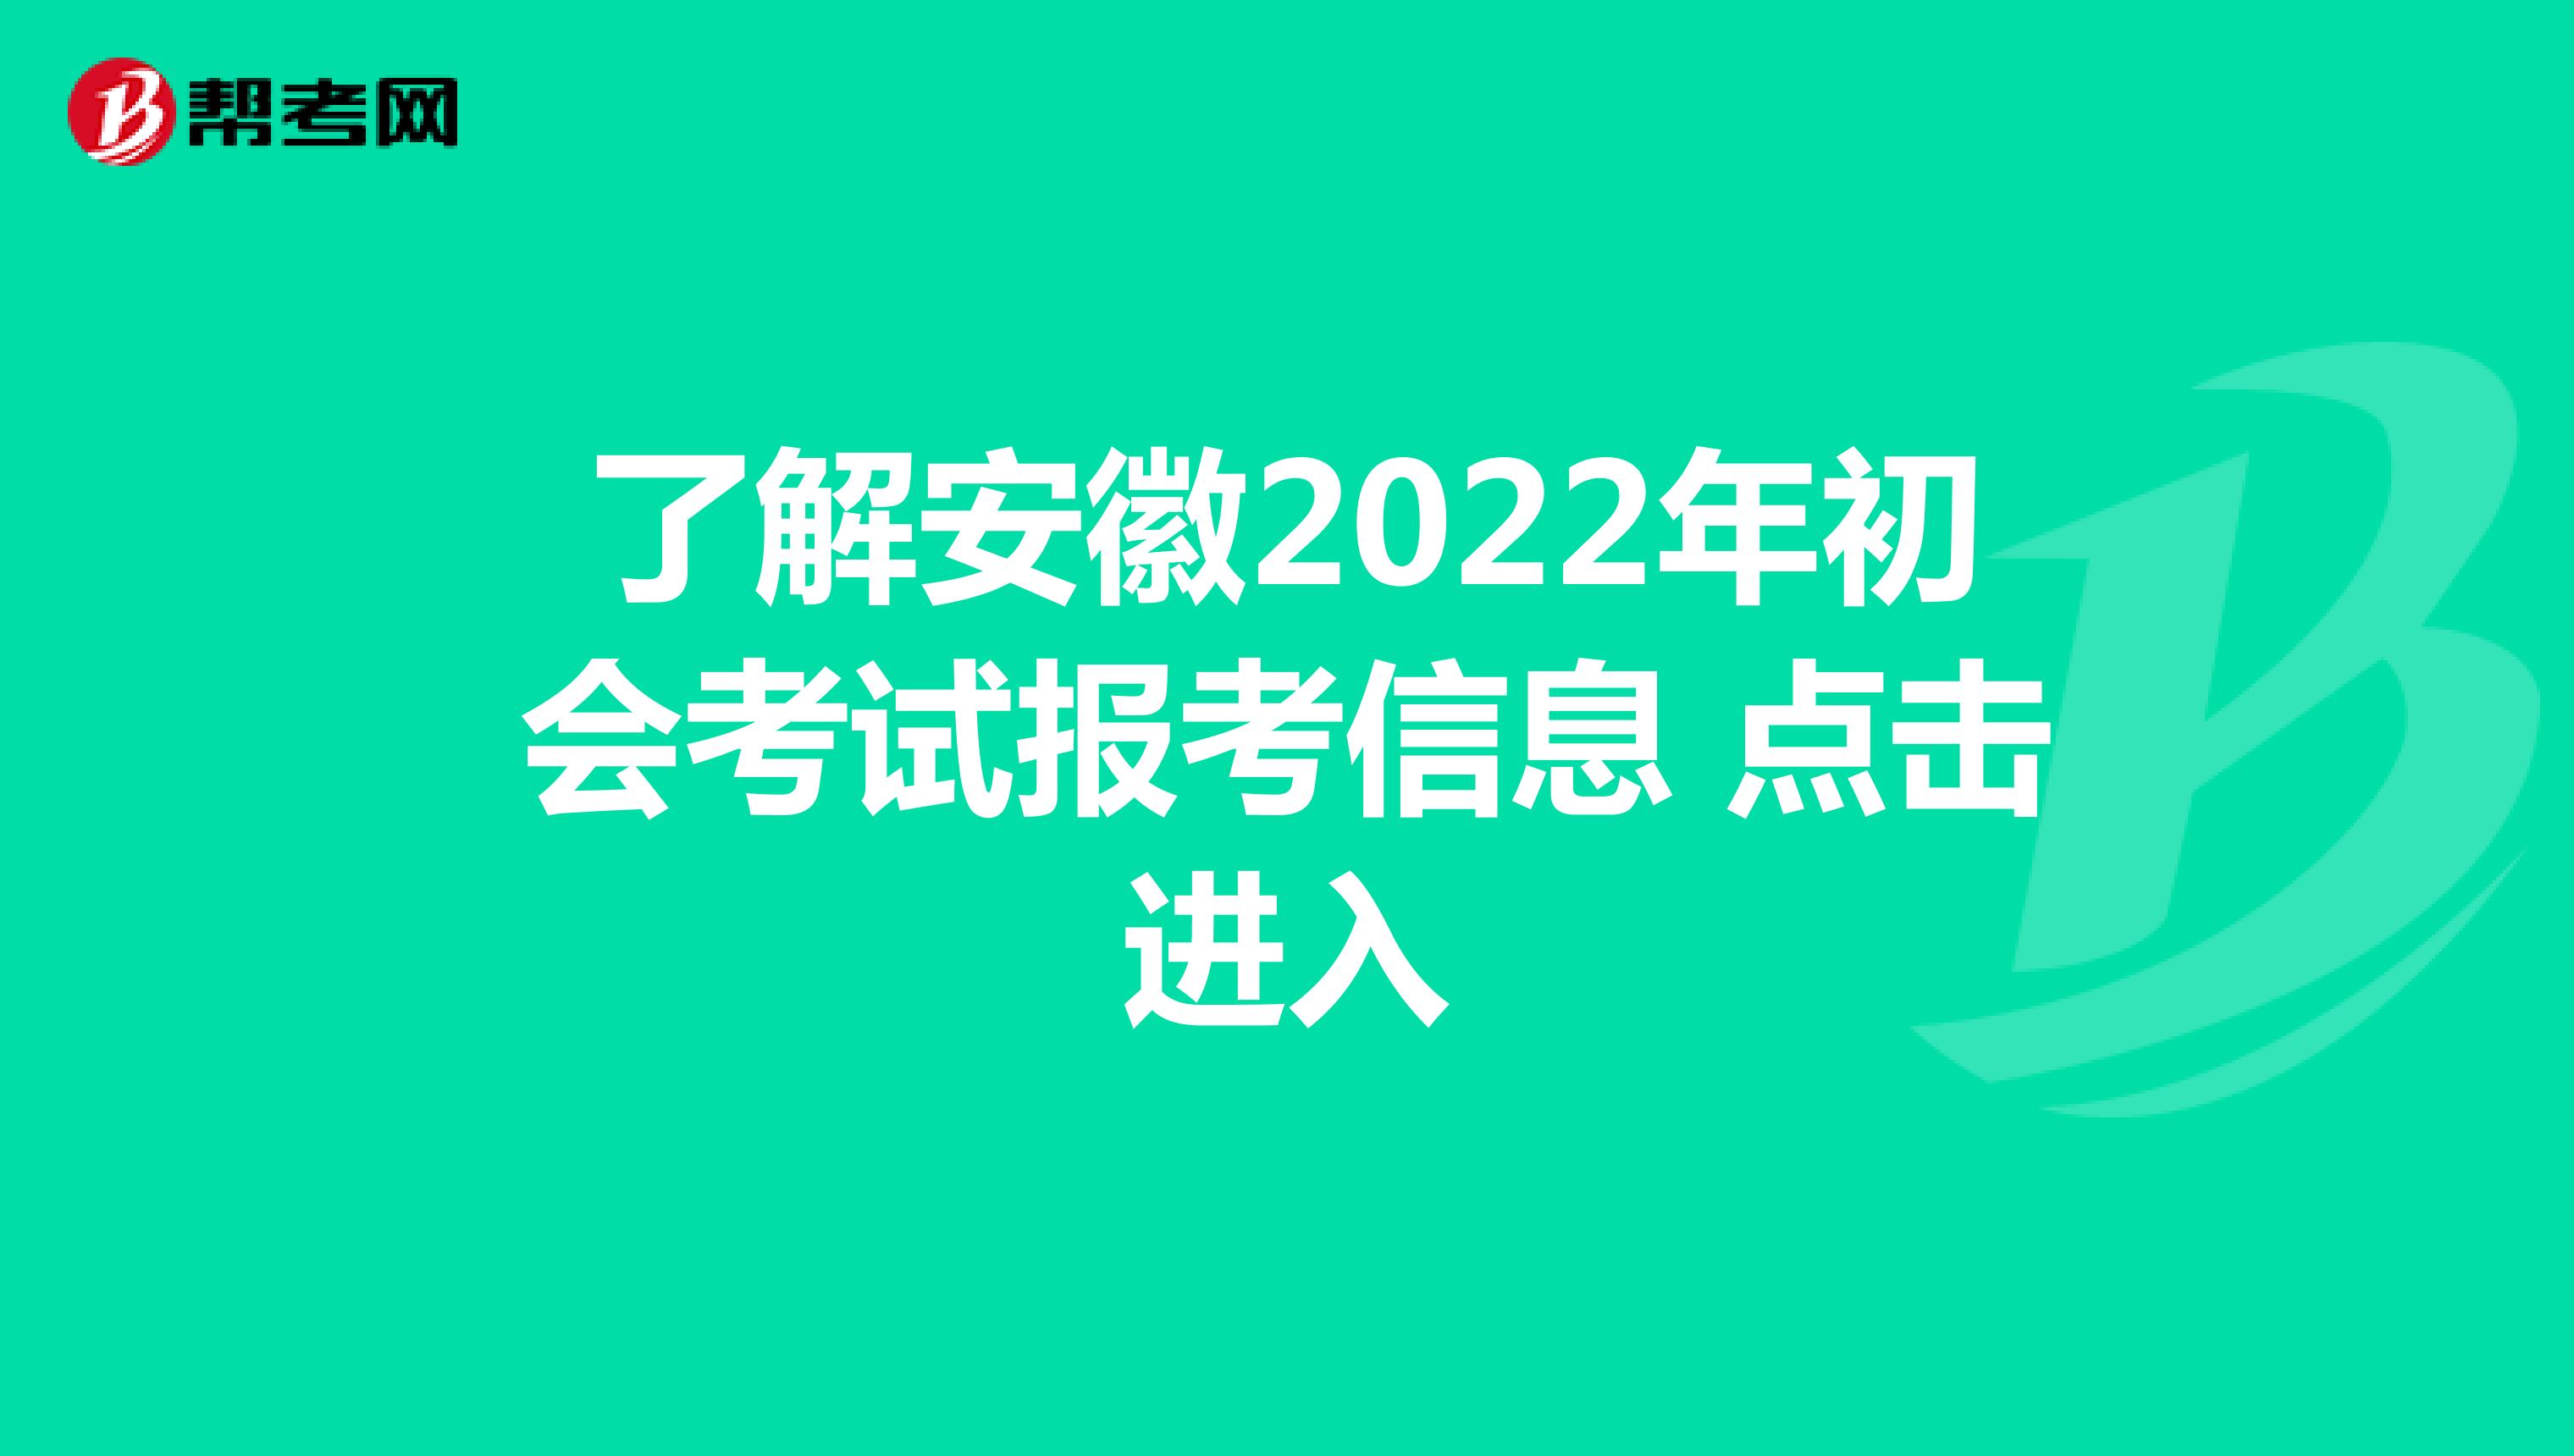 了解安徽2022年初会考试报考信息 点击进入